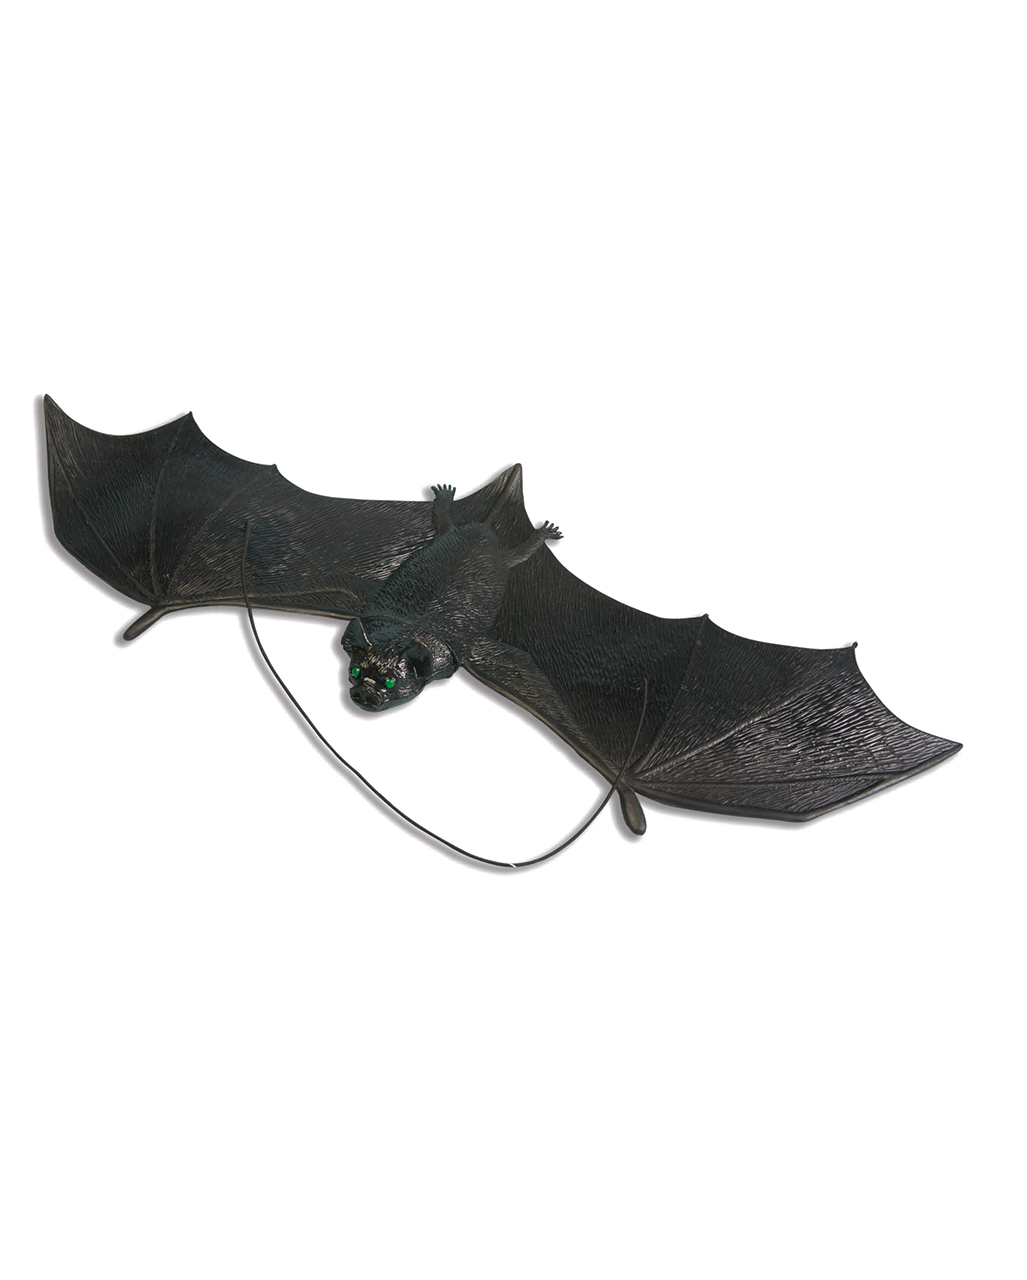 Große Fledermaus Figur Halloween Deko Horror Dekoration Hängedeko Bat Flughund